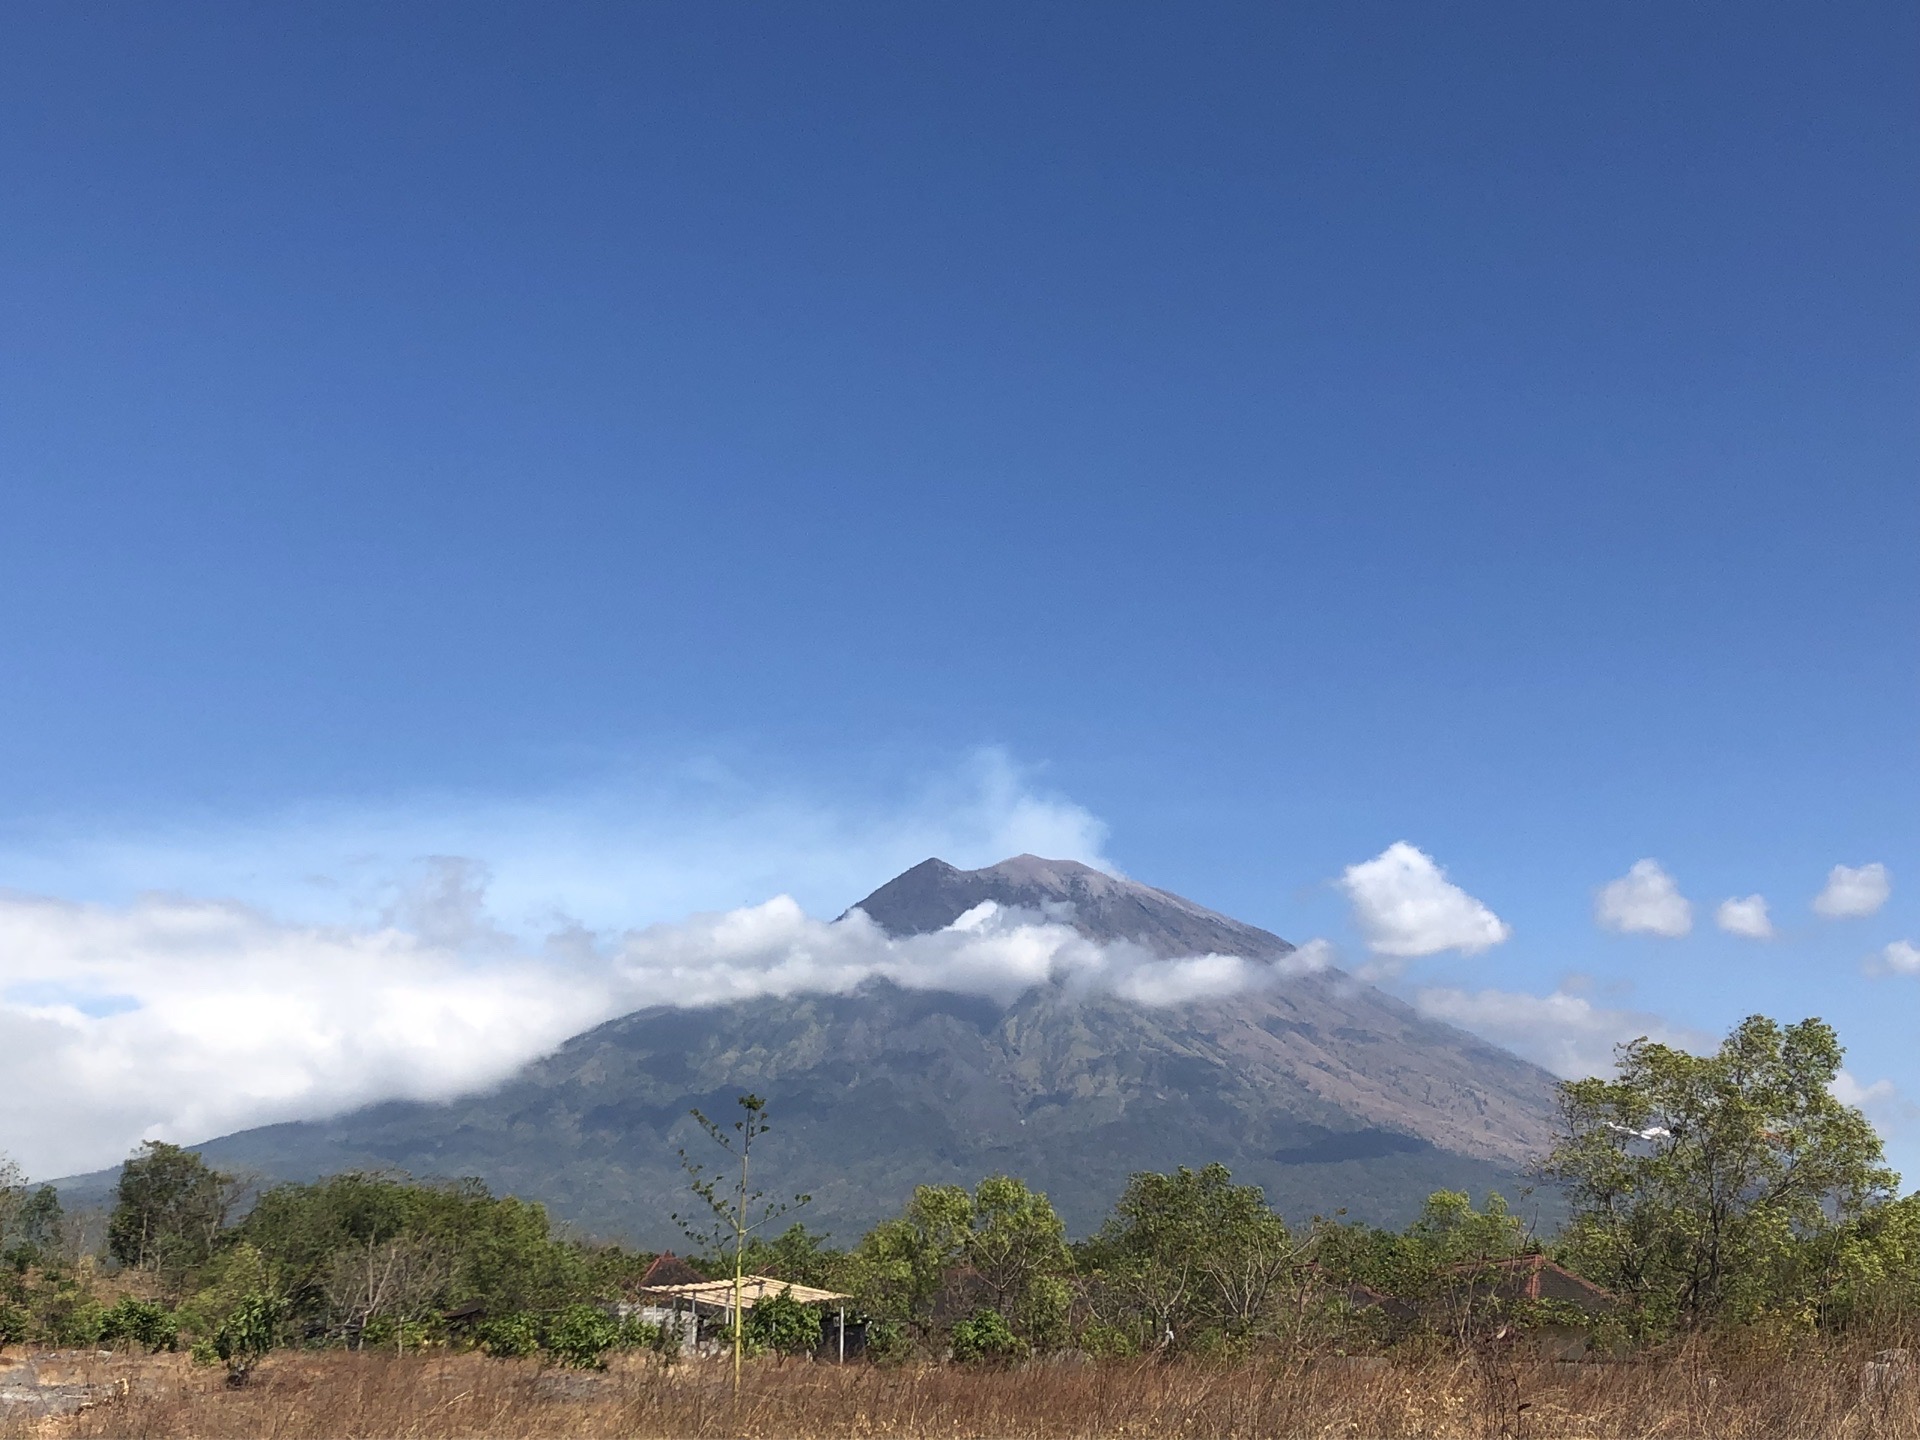 巴厘岛｜“深蓝鸦片”和美丽火山 在巴厘岛，我和小伙伴远远观摩了阿贡火山，乍一看仿佛很像富士山，很美。